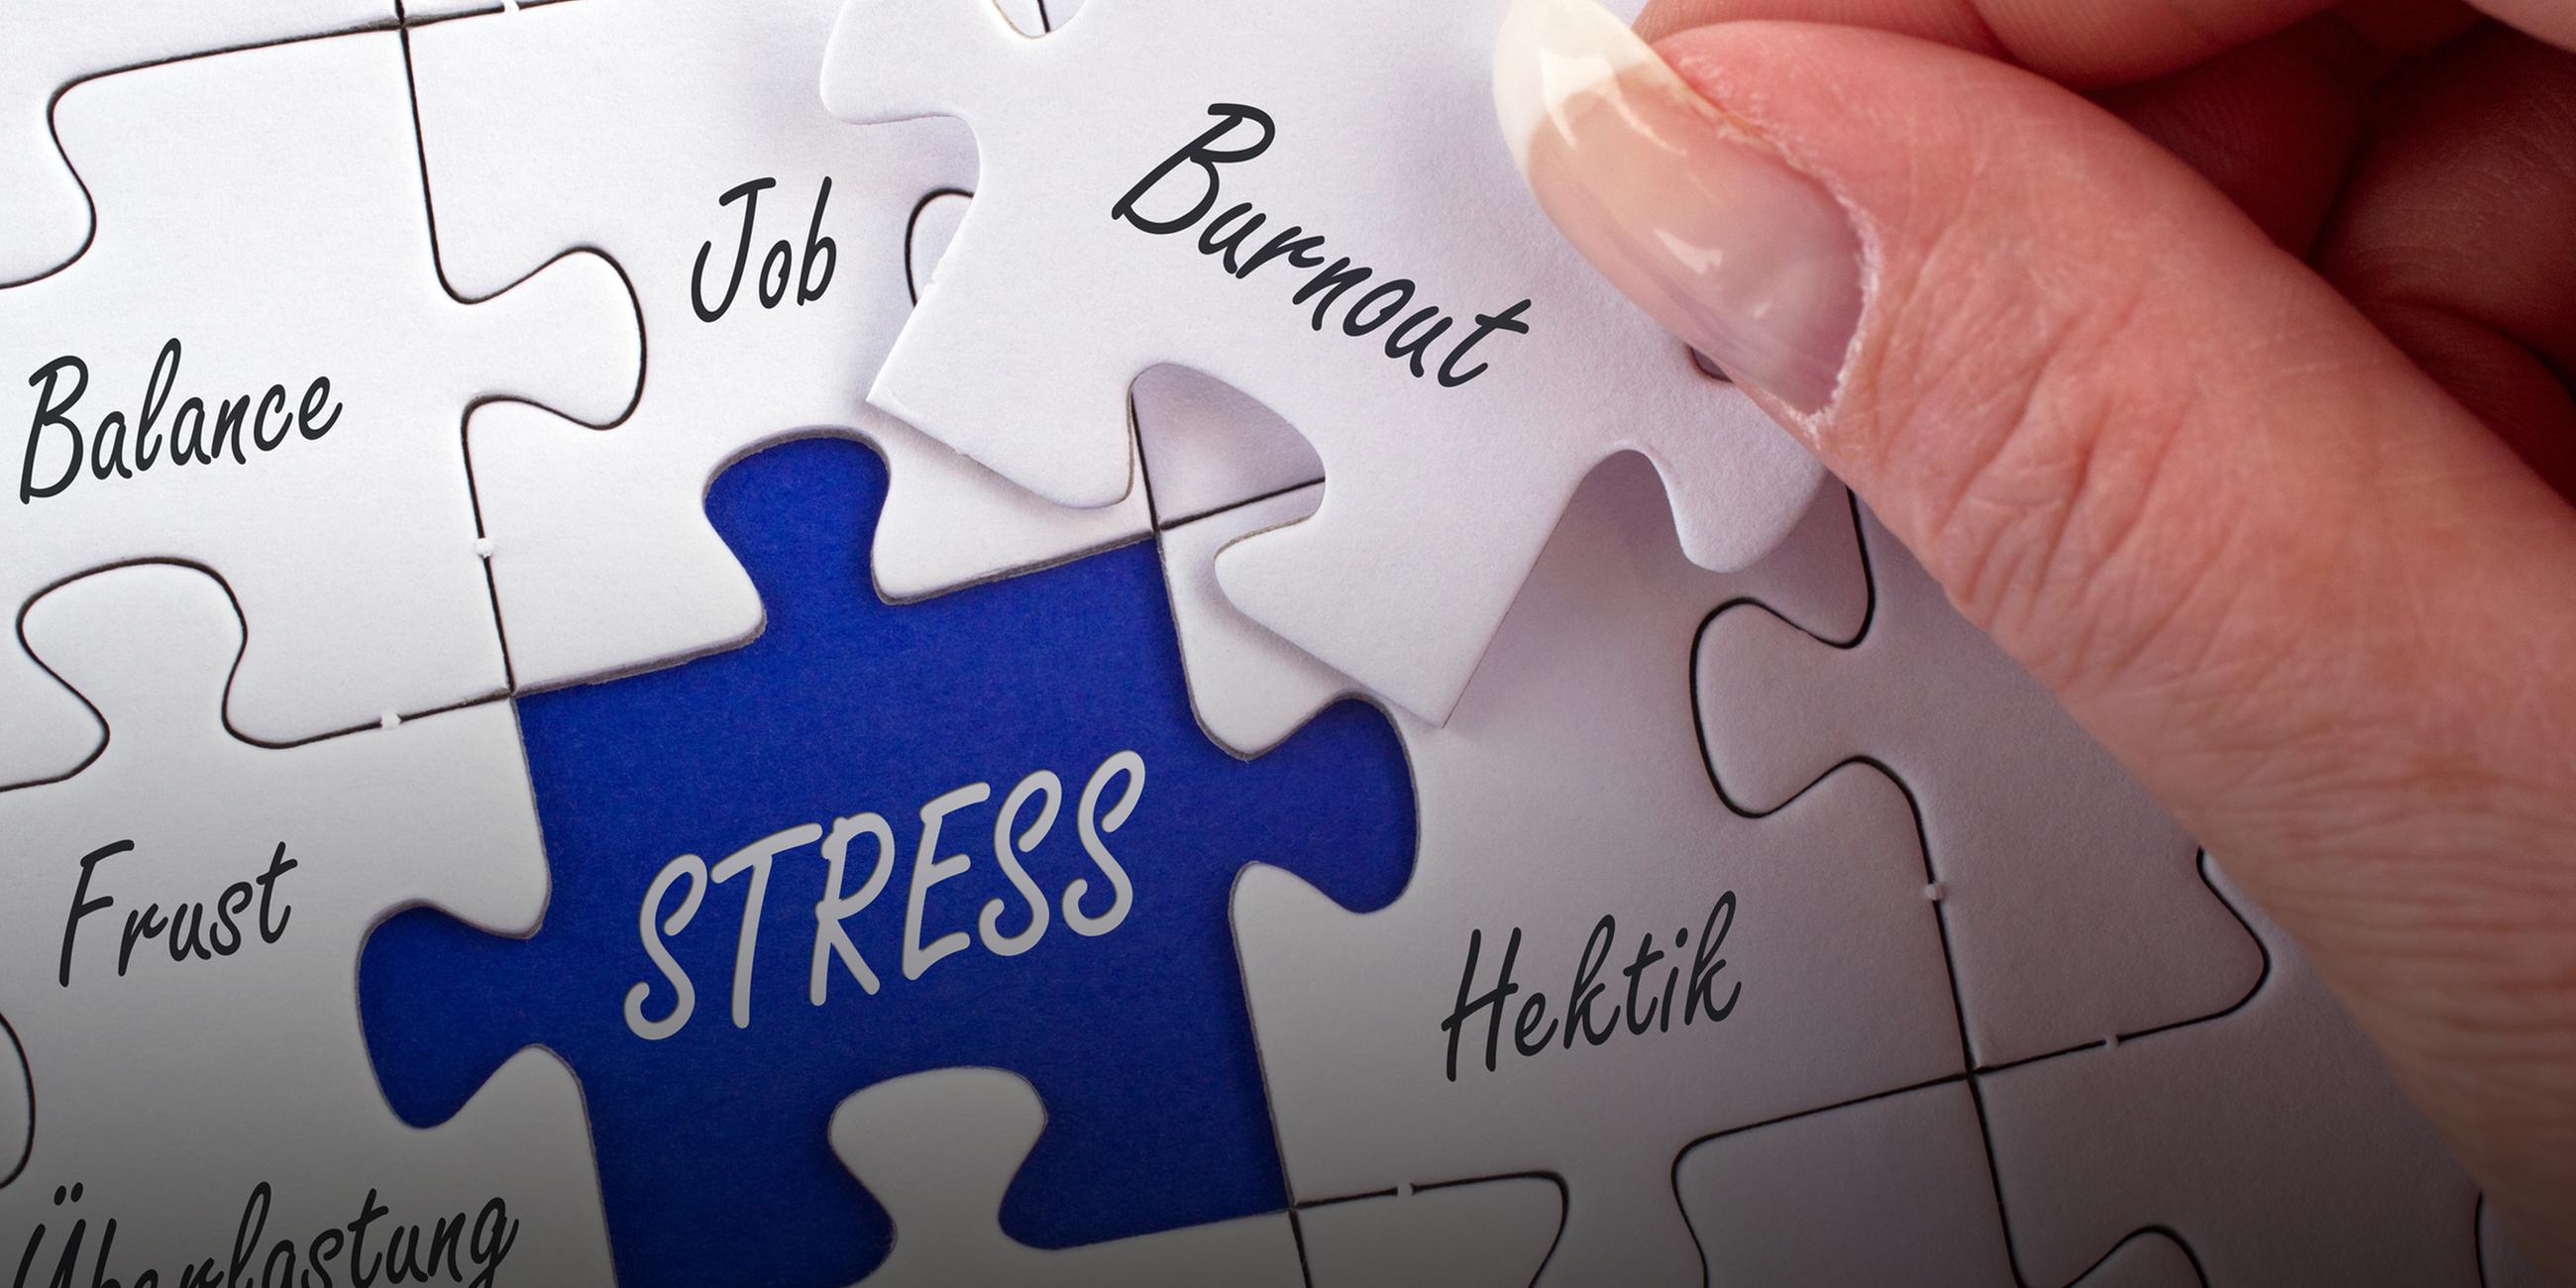 Archiv: Puzzle zum Thema Stress im Berufsleben, Burnout, Hektik